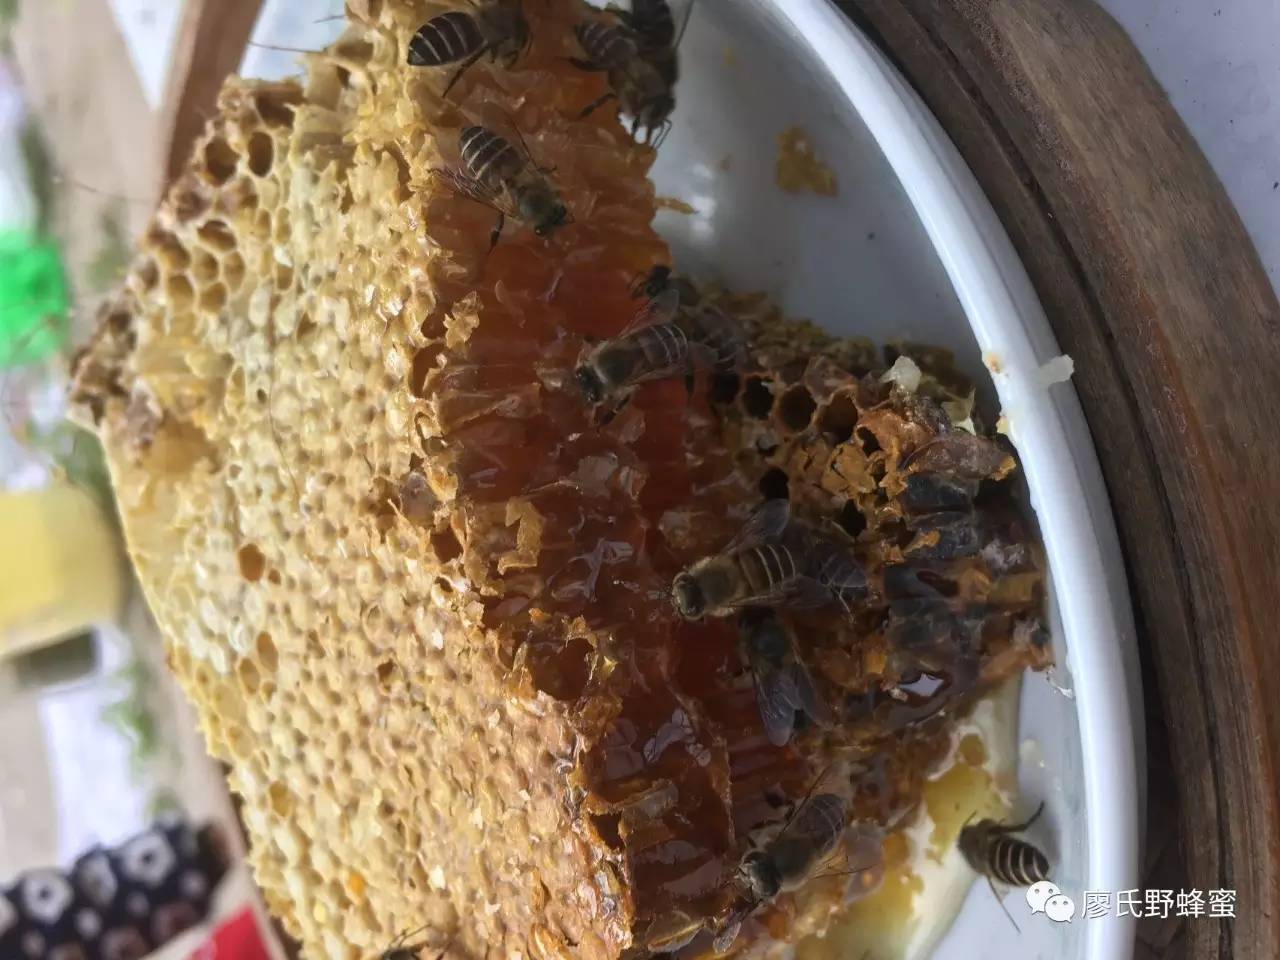 怎样制作蜂蜜面膜 蜂蜜怎么美白 消除 正宗蜂蜜多少钱一斤 蜂蜜柚子茶作用